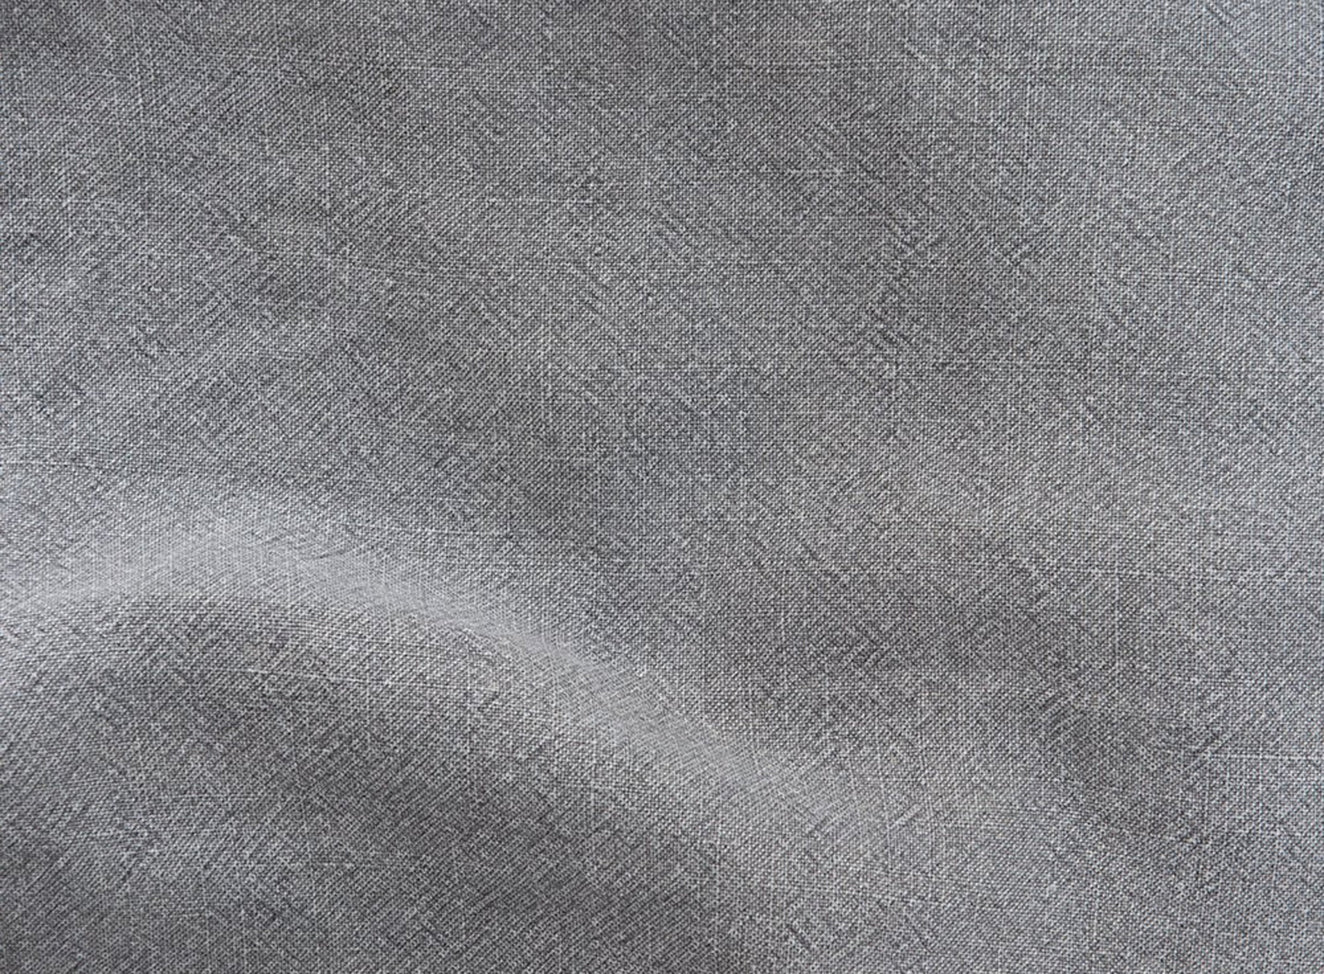 Ink Cap, a medium cool grey Light Weight Linen